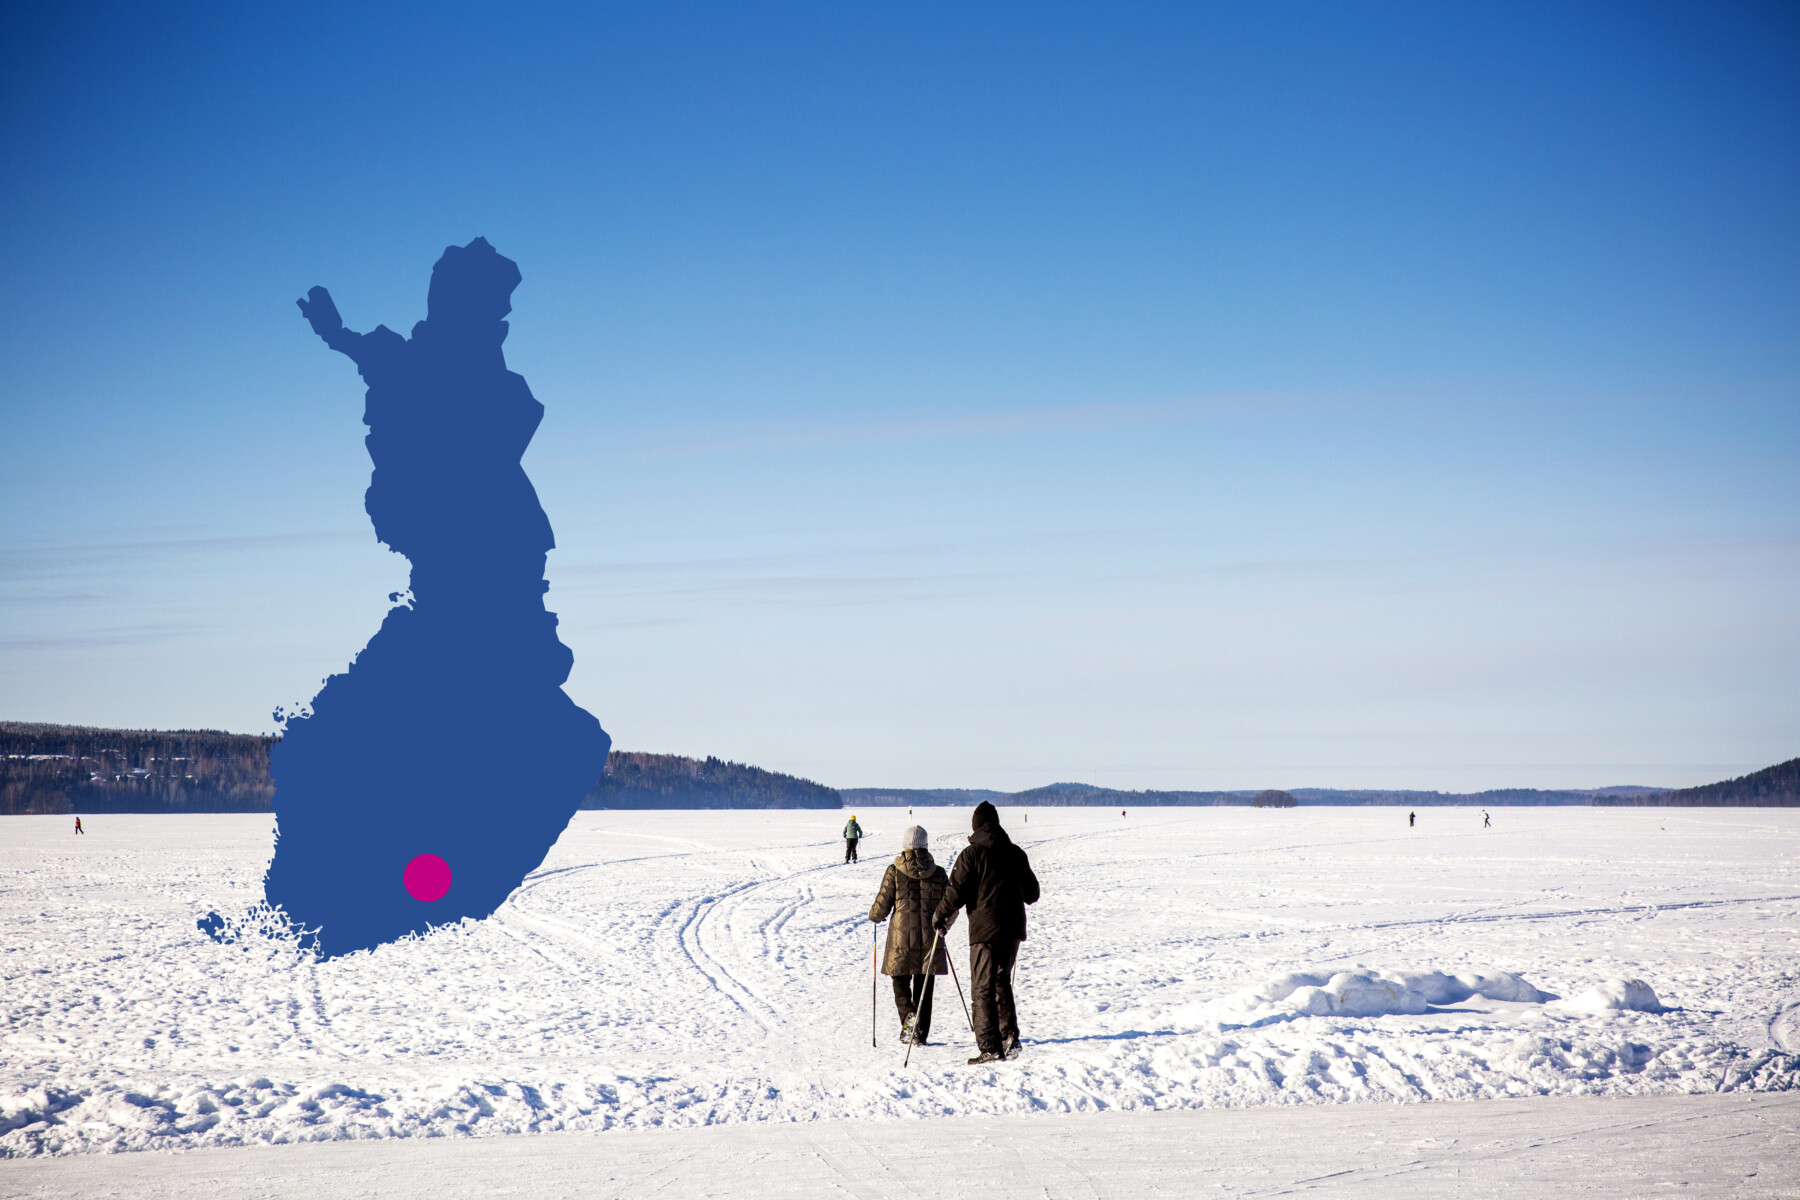 Люди катаются на беговых лыжах по замерзшему озеру под голубым небом в городе Лахти на юге Финляндии (его локация отмечена красной точкой на синем силуэте карты Финляндии).